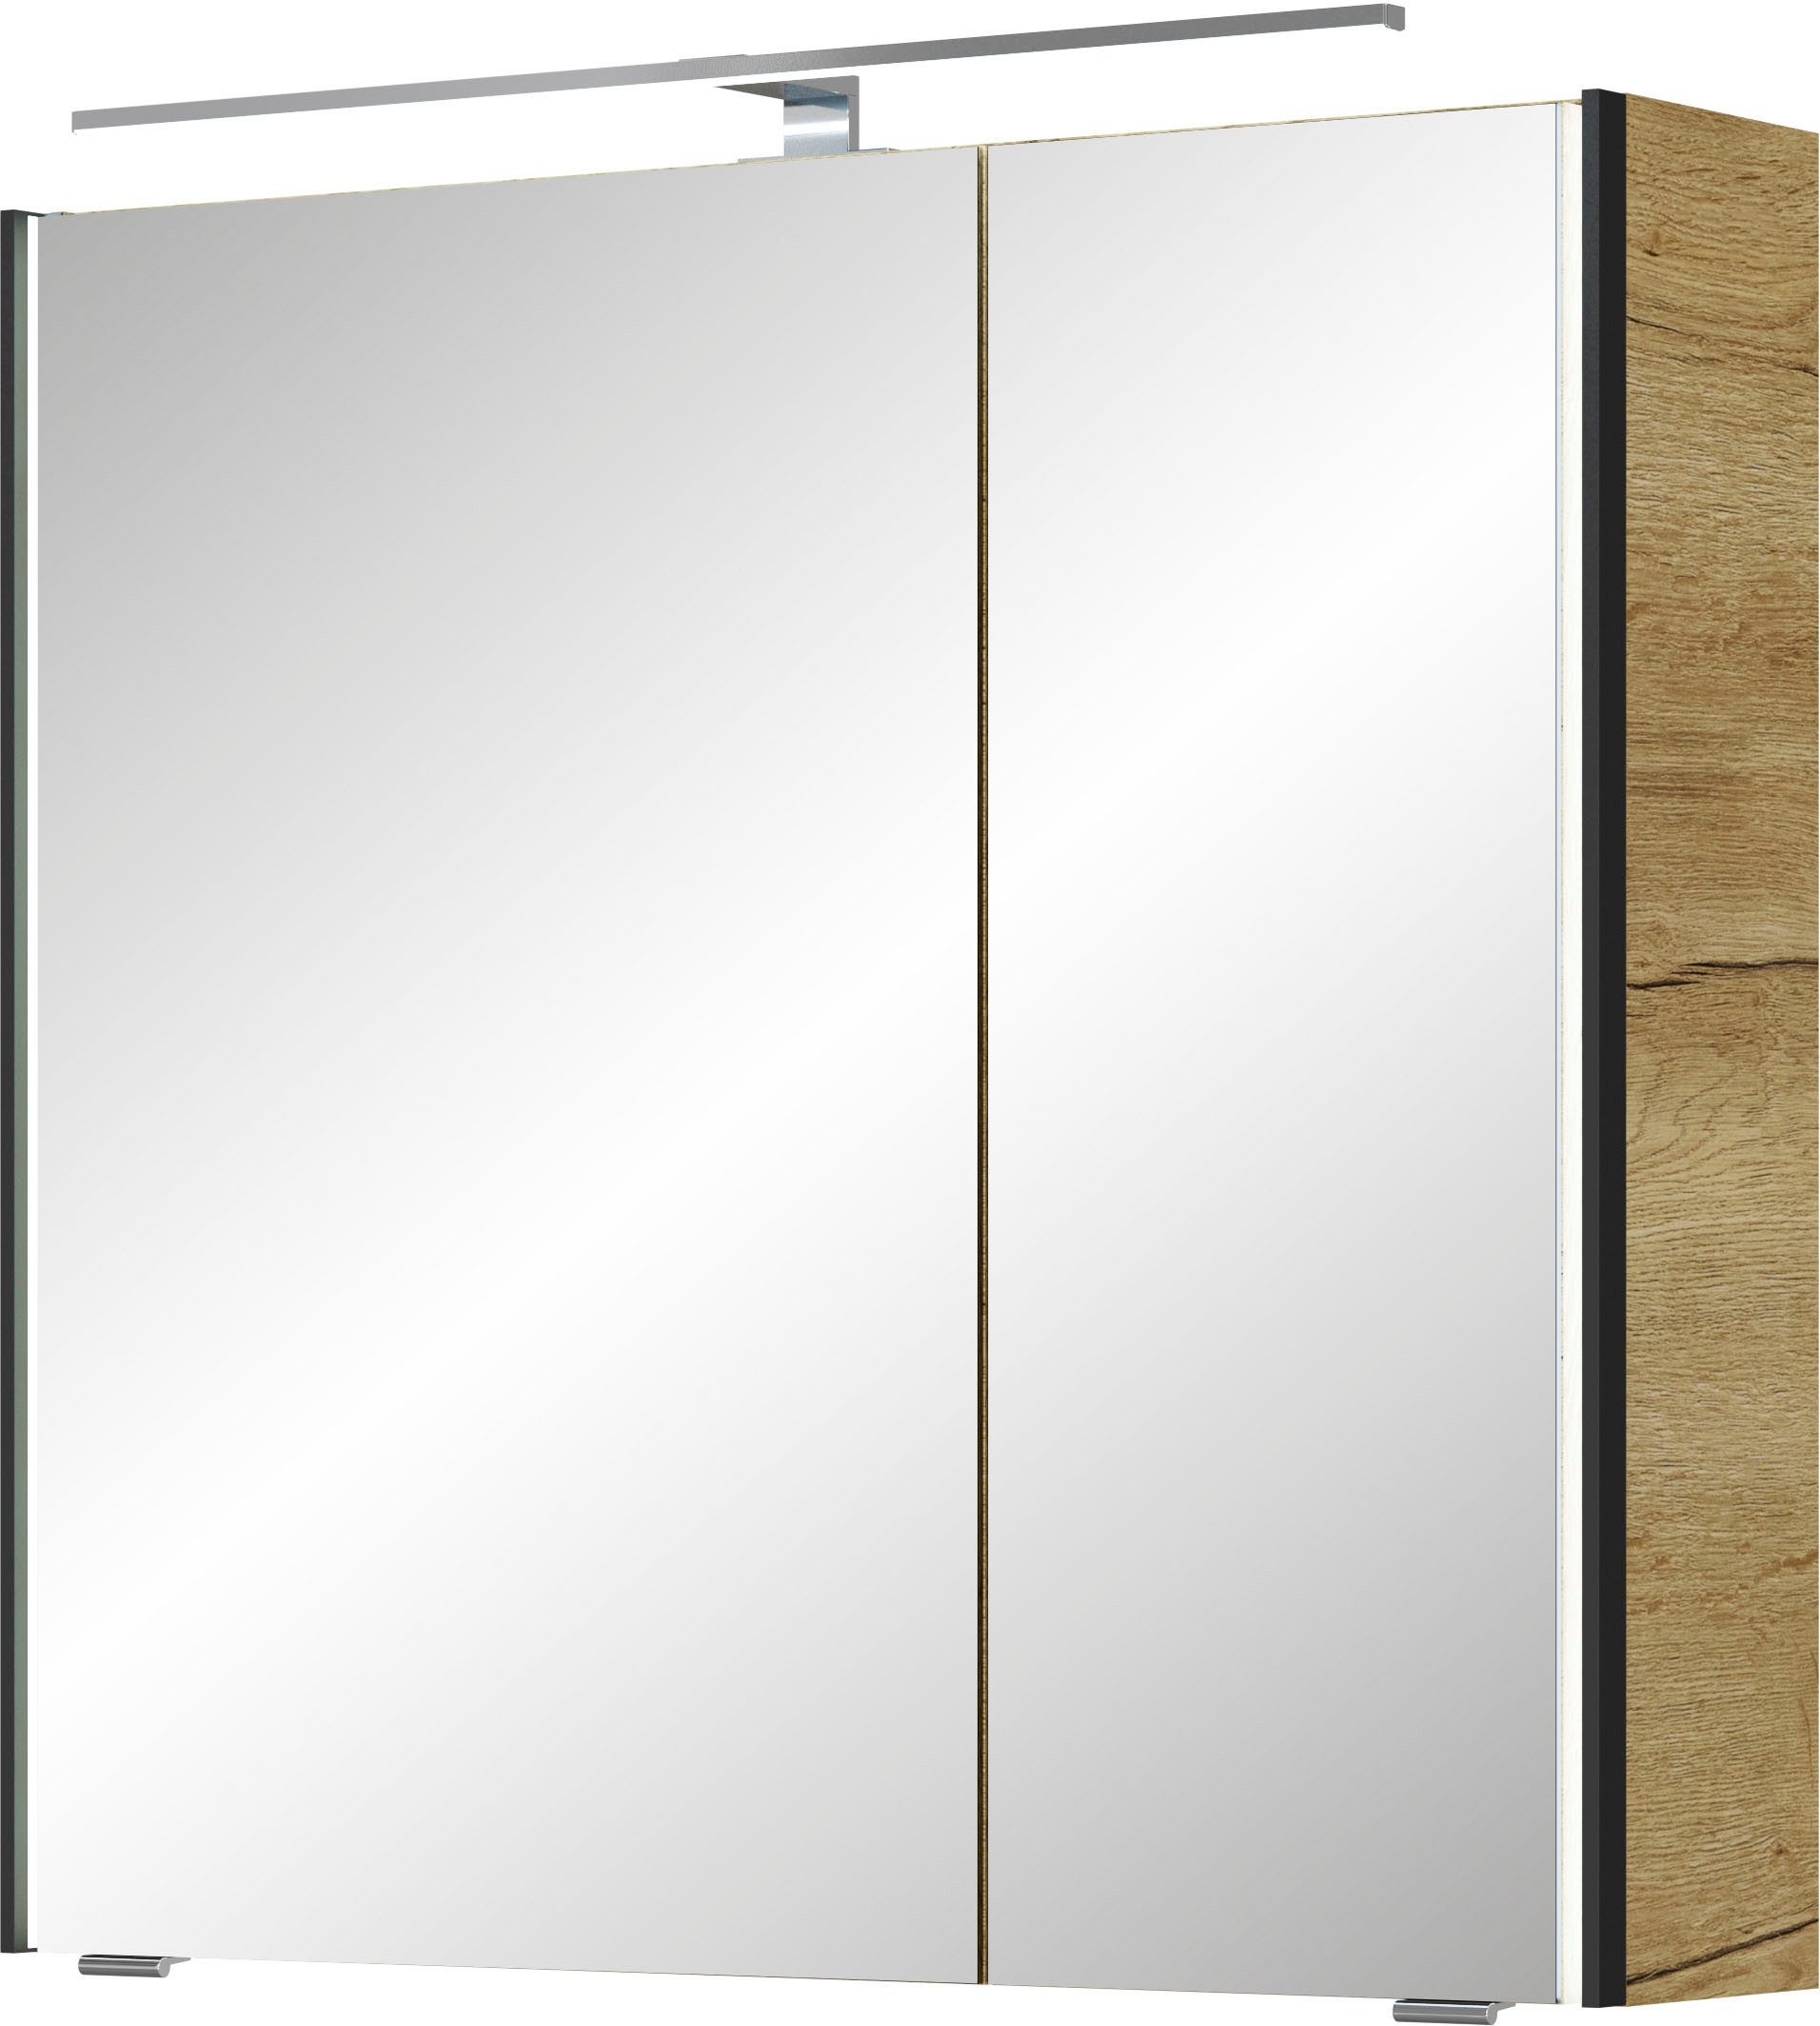 Saphir Spiegelkast Serie 7045 Badezimmer-Spiegelschrank inkl. LED-Beleuchtung, 2 Türen